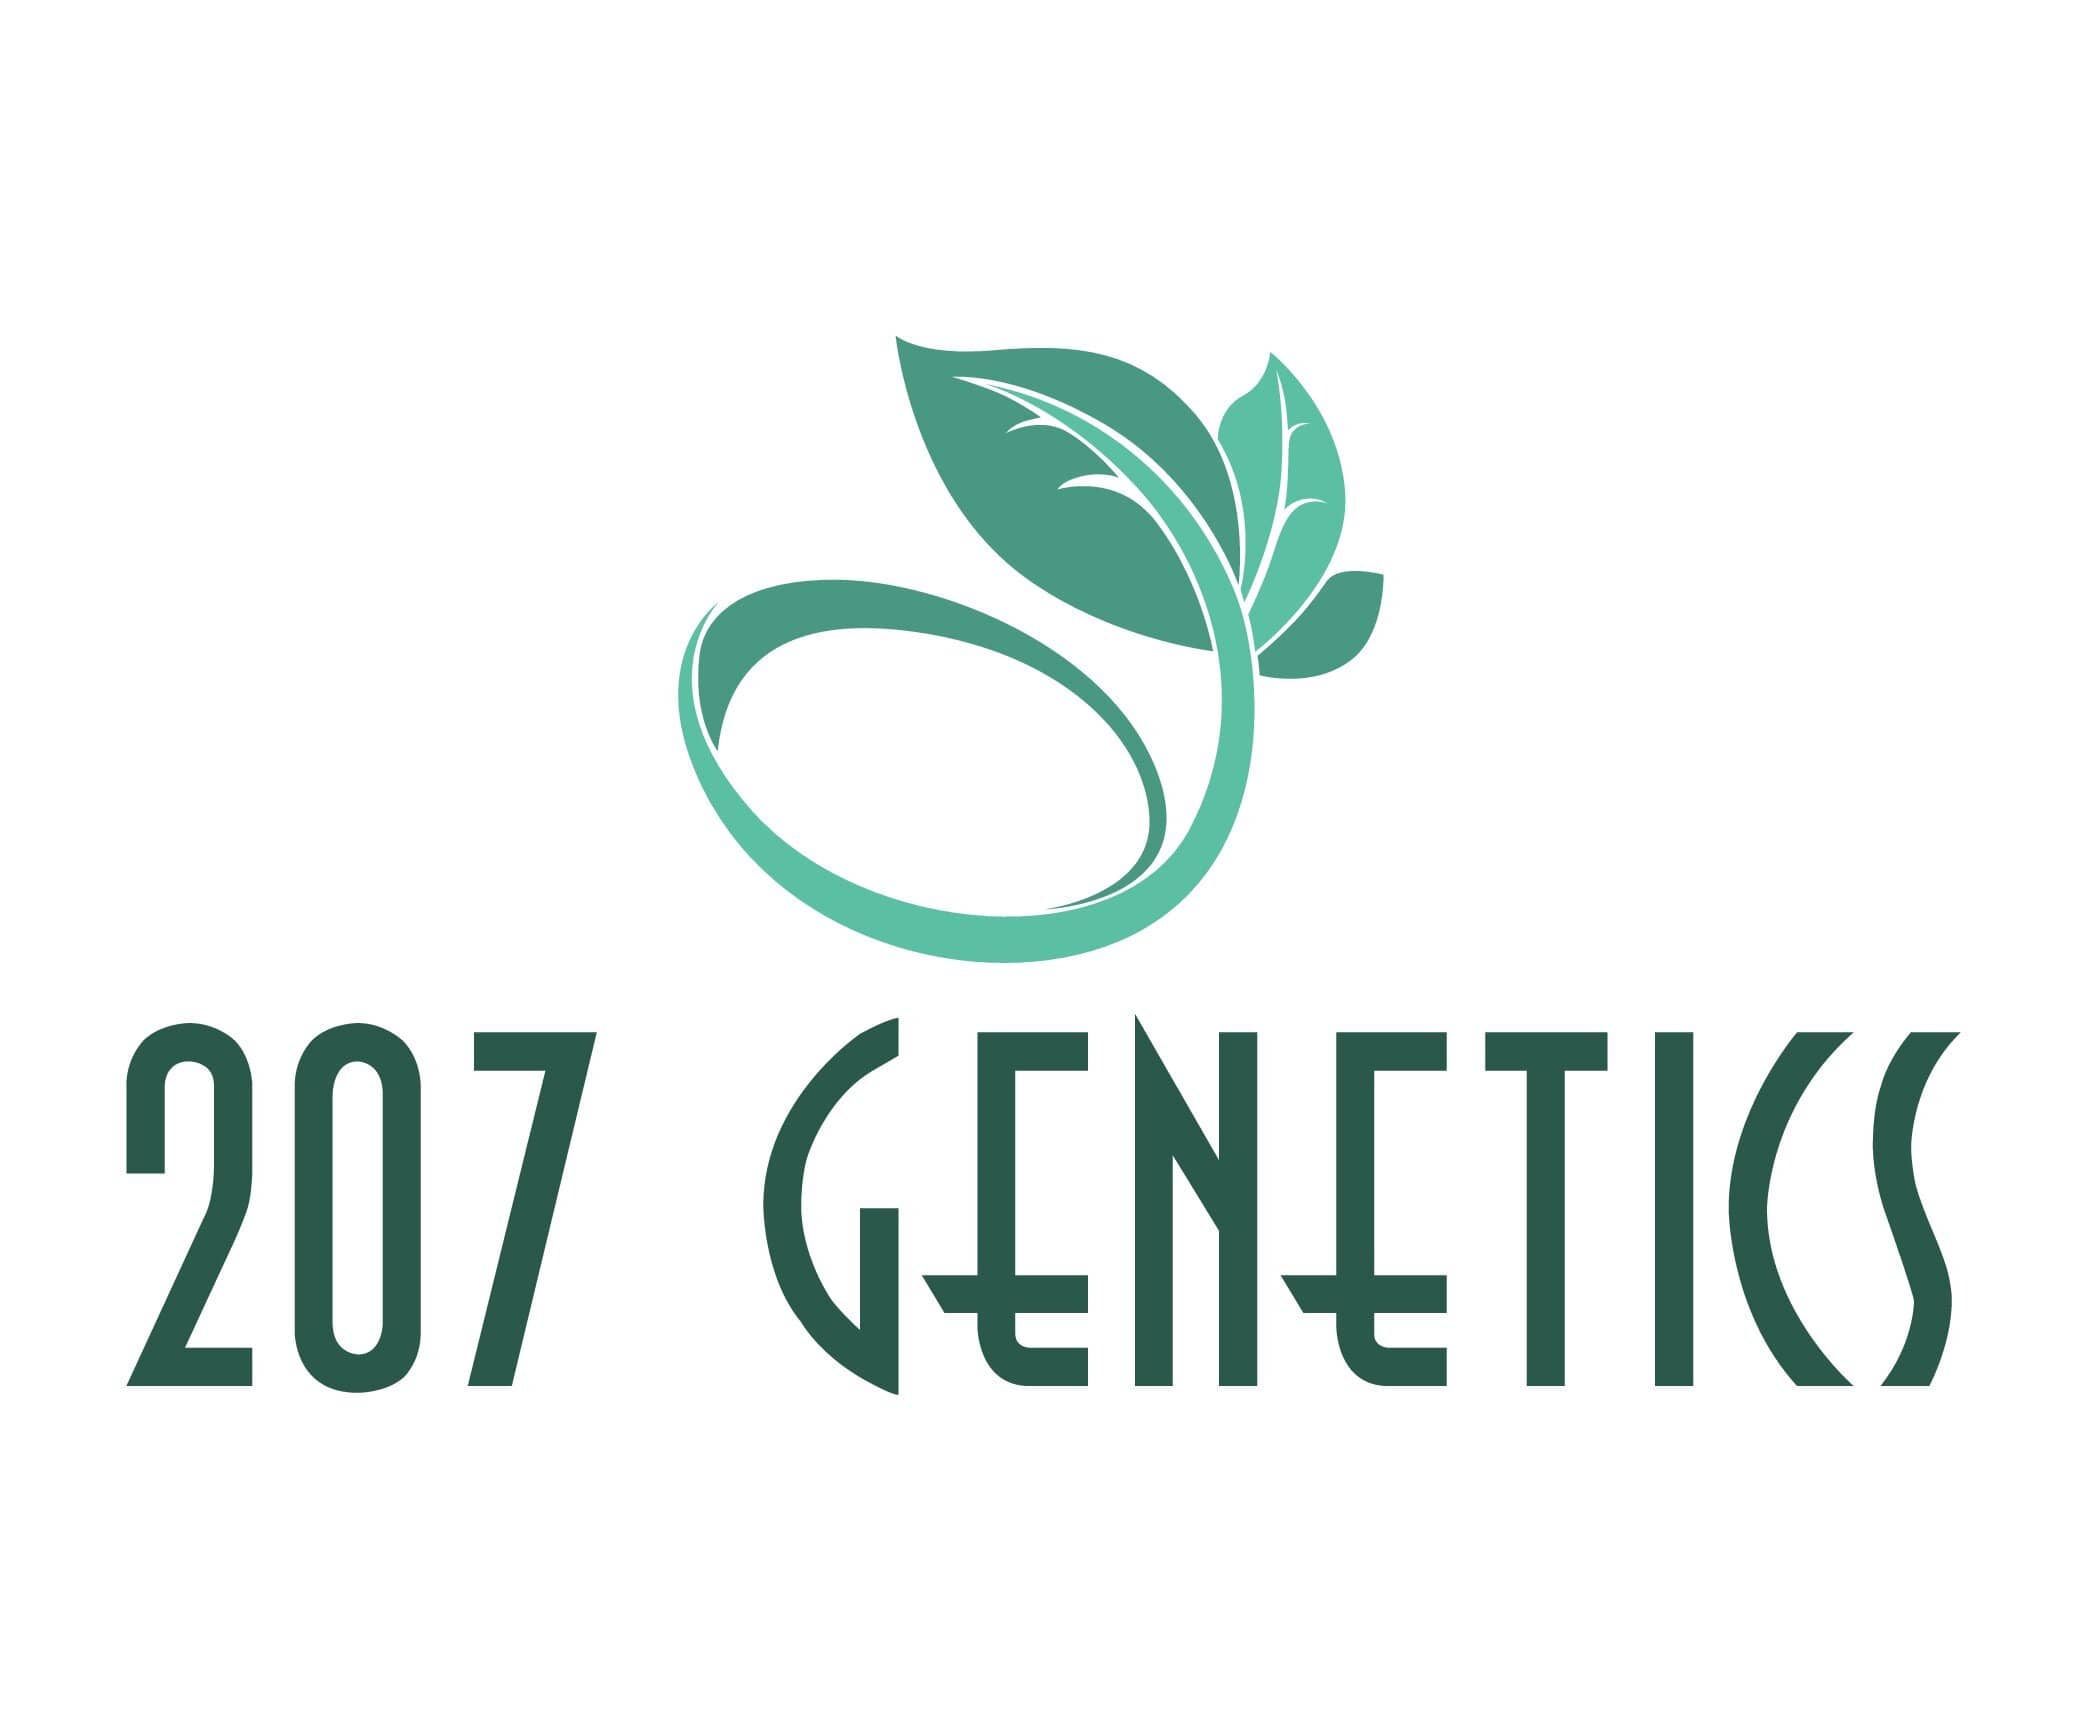 207 genetics seed bank